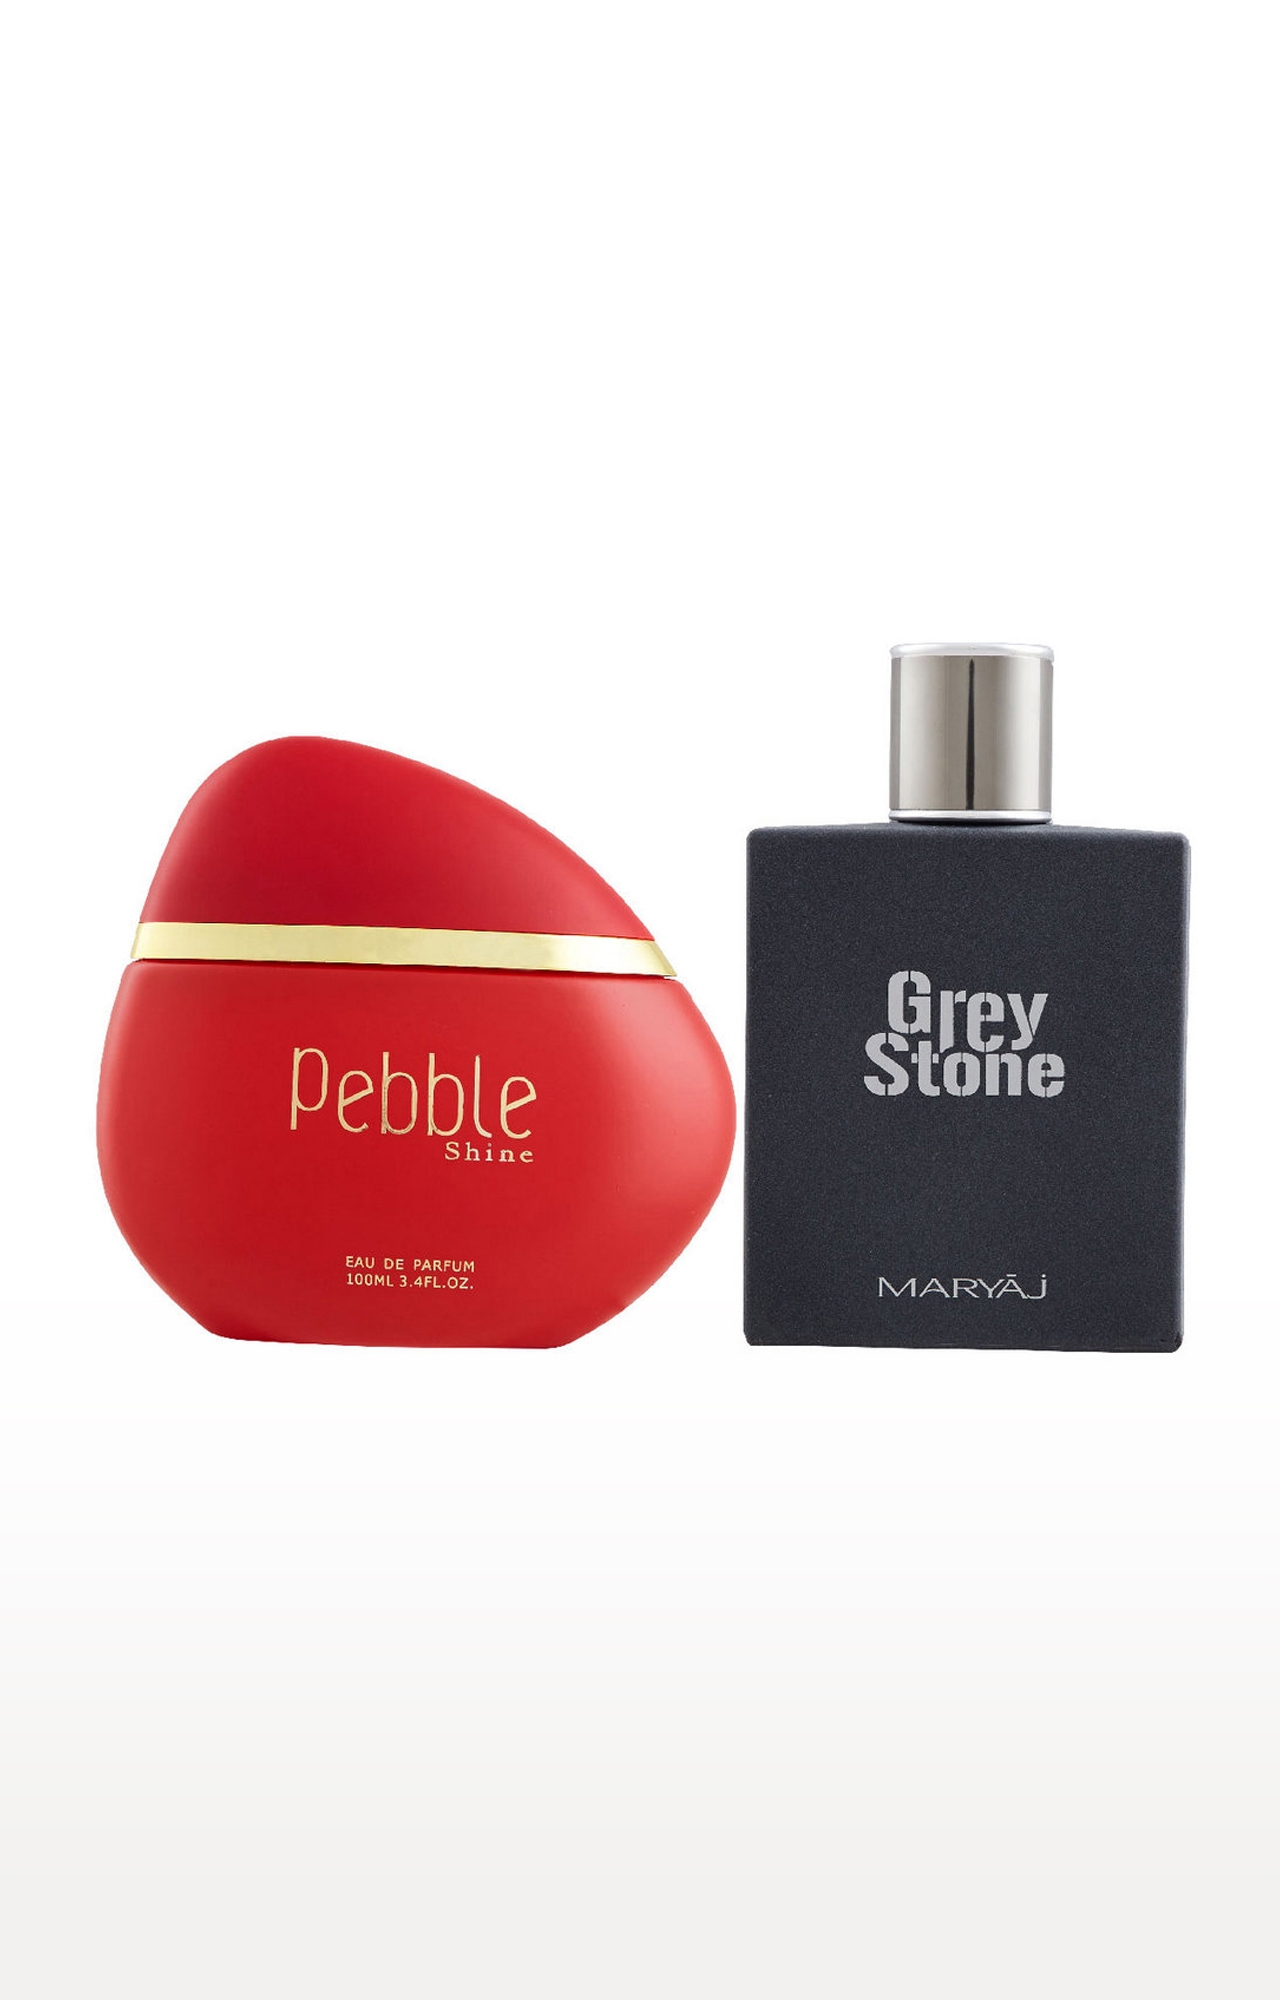 Maryaj | Maryaj Pebble Shine Eau De Parfum Fruity Perfume 100ml for Women and Maryaj Grey Stone Eau De Parfum Perfume 100ml for Men 0